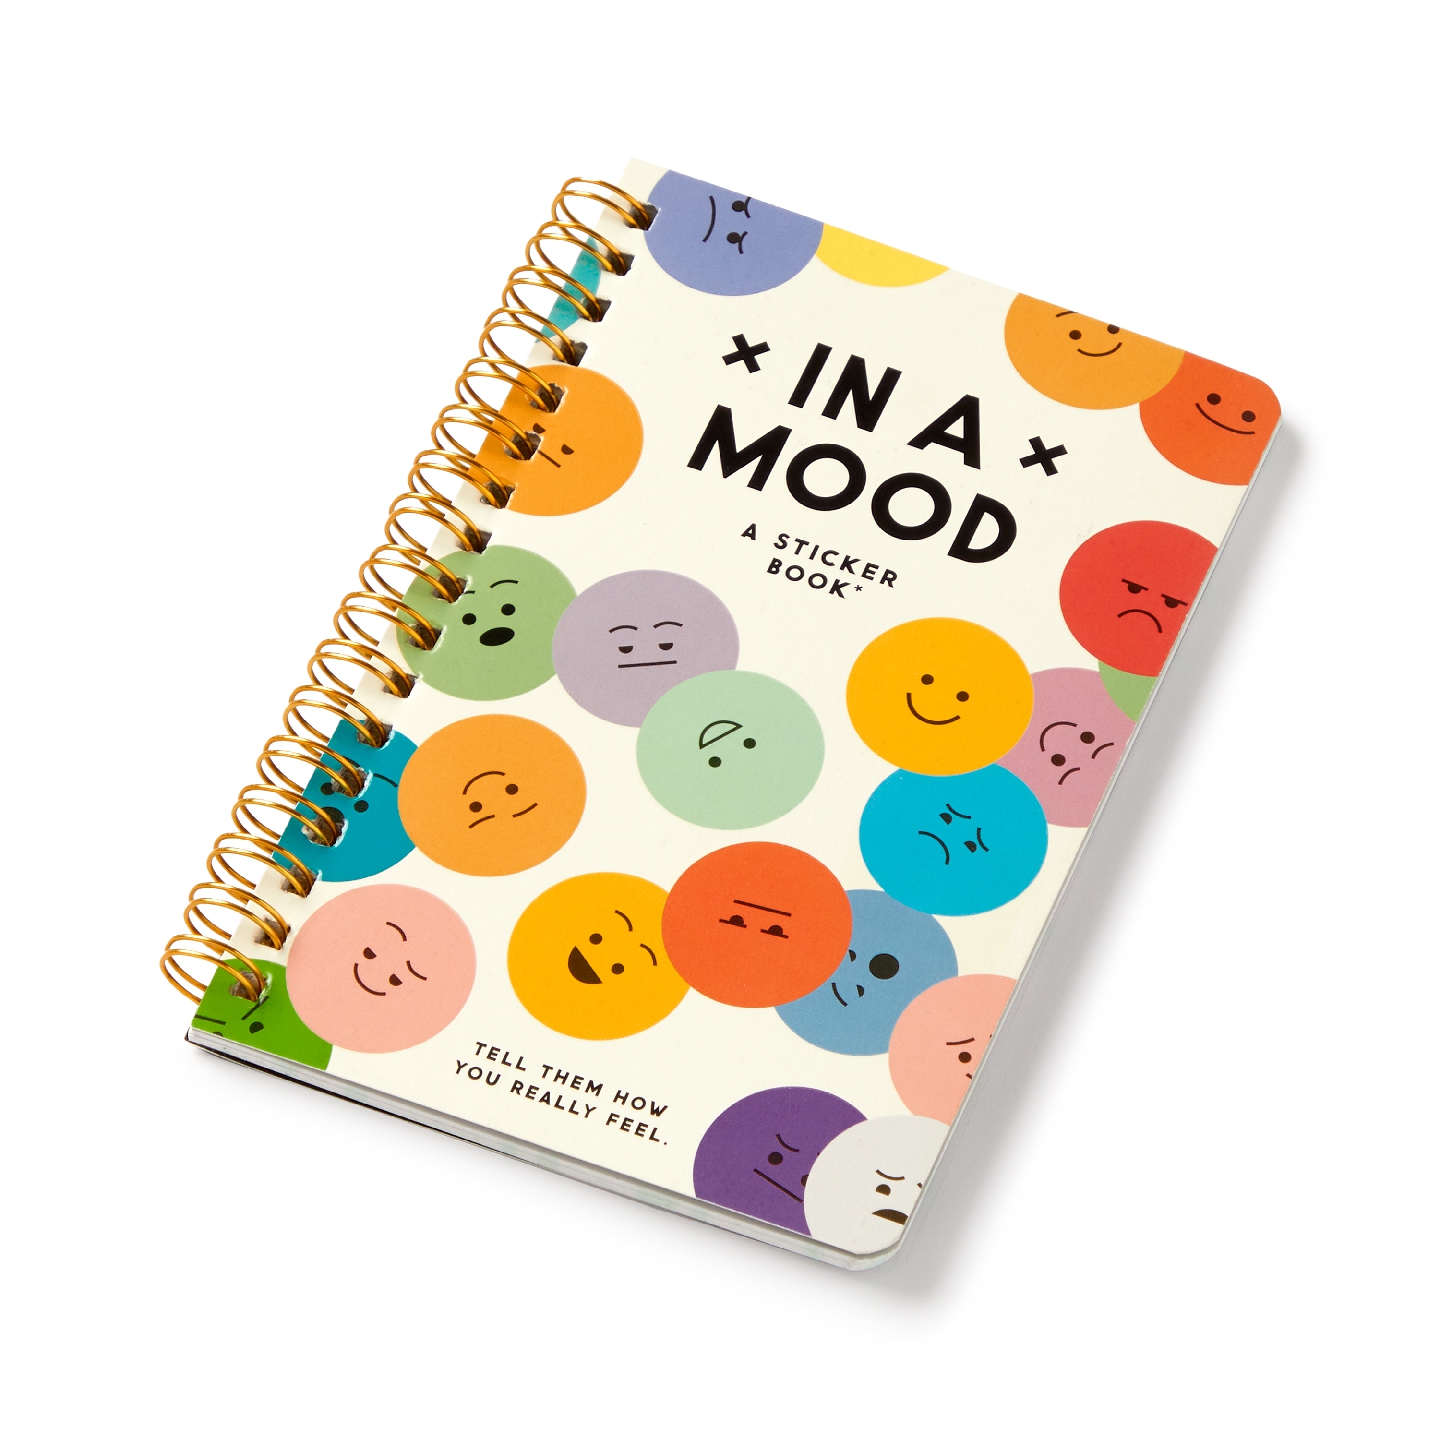 In A Mood Sticker Book